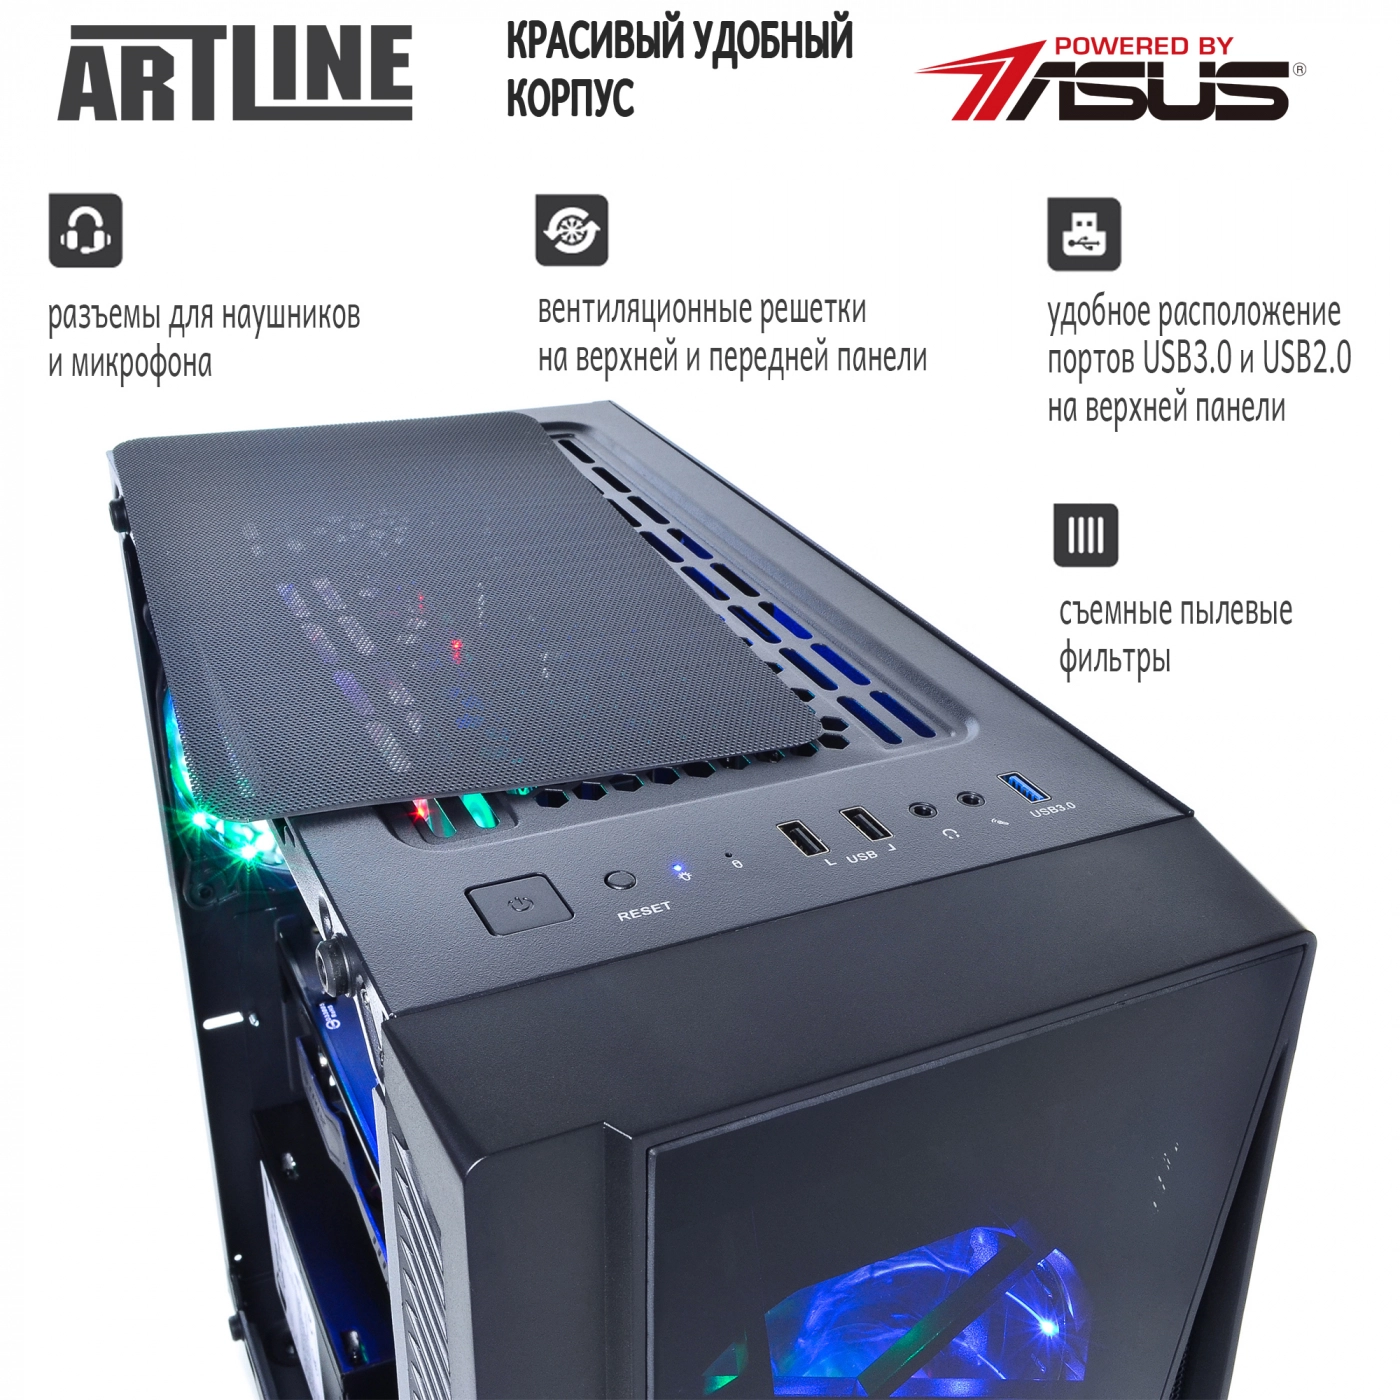 Купить Компьютер ARTLINE Gaming X35v26 - фото 3